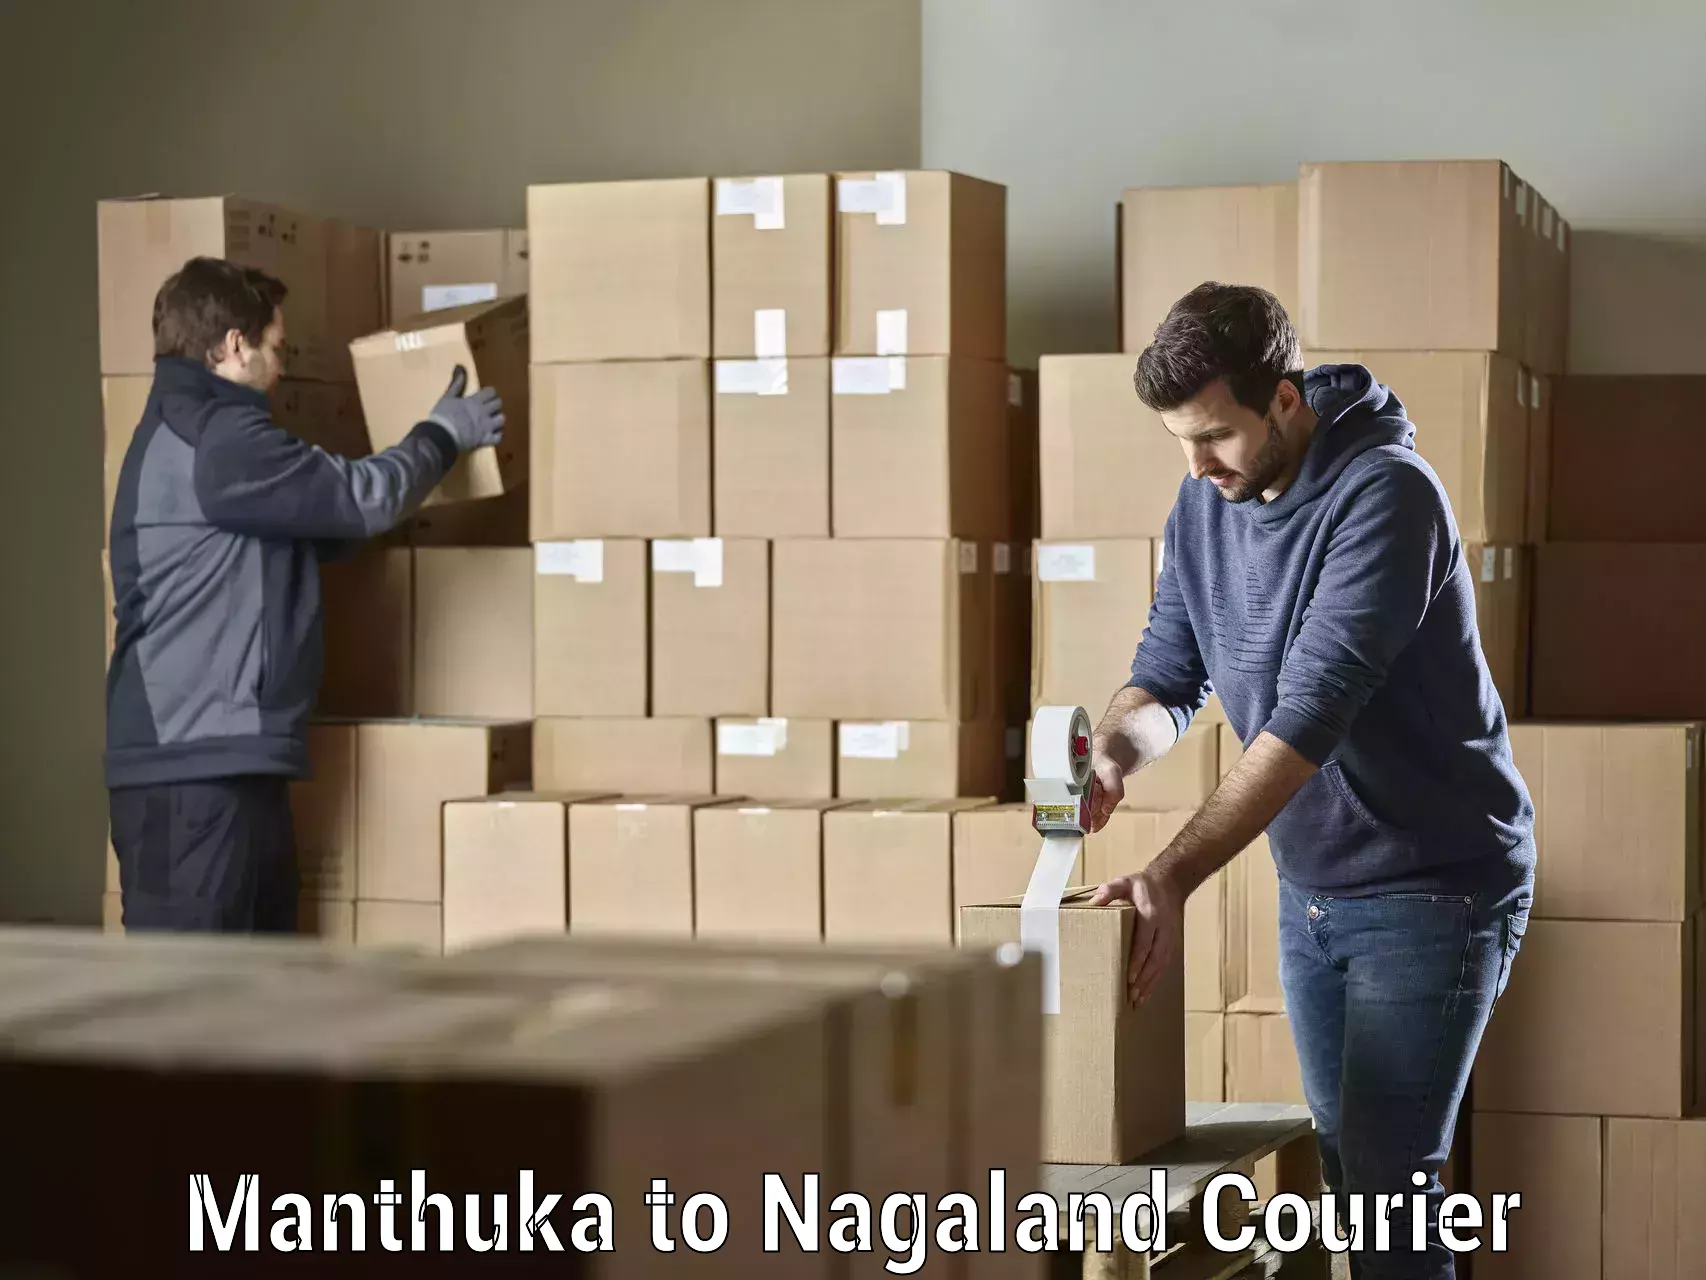 Efficient order fulfillment Manthuka to Nagaland